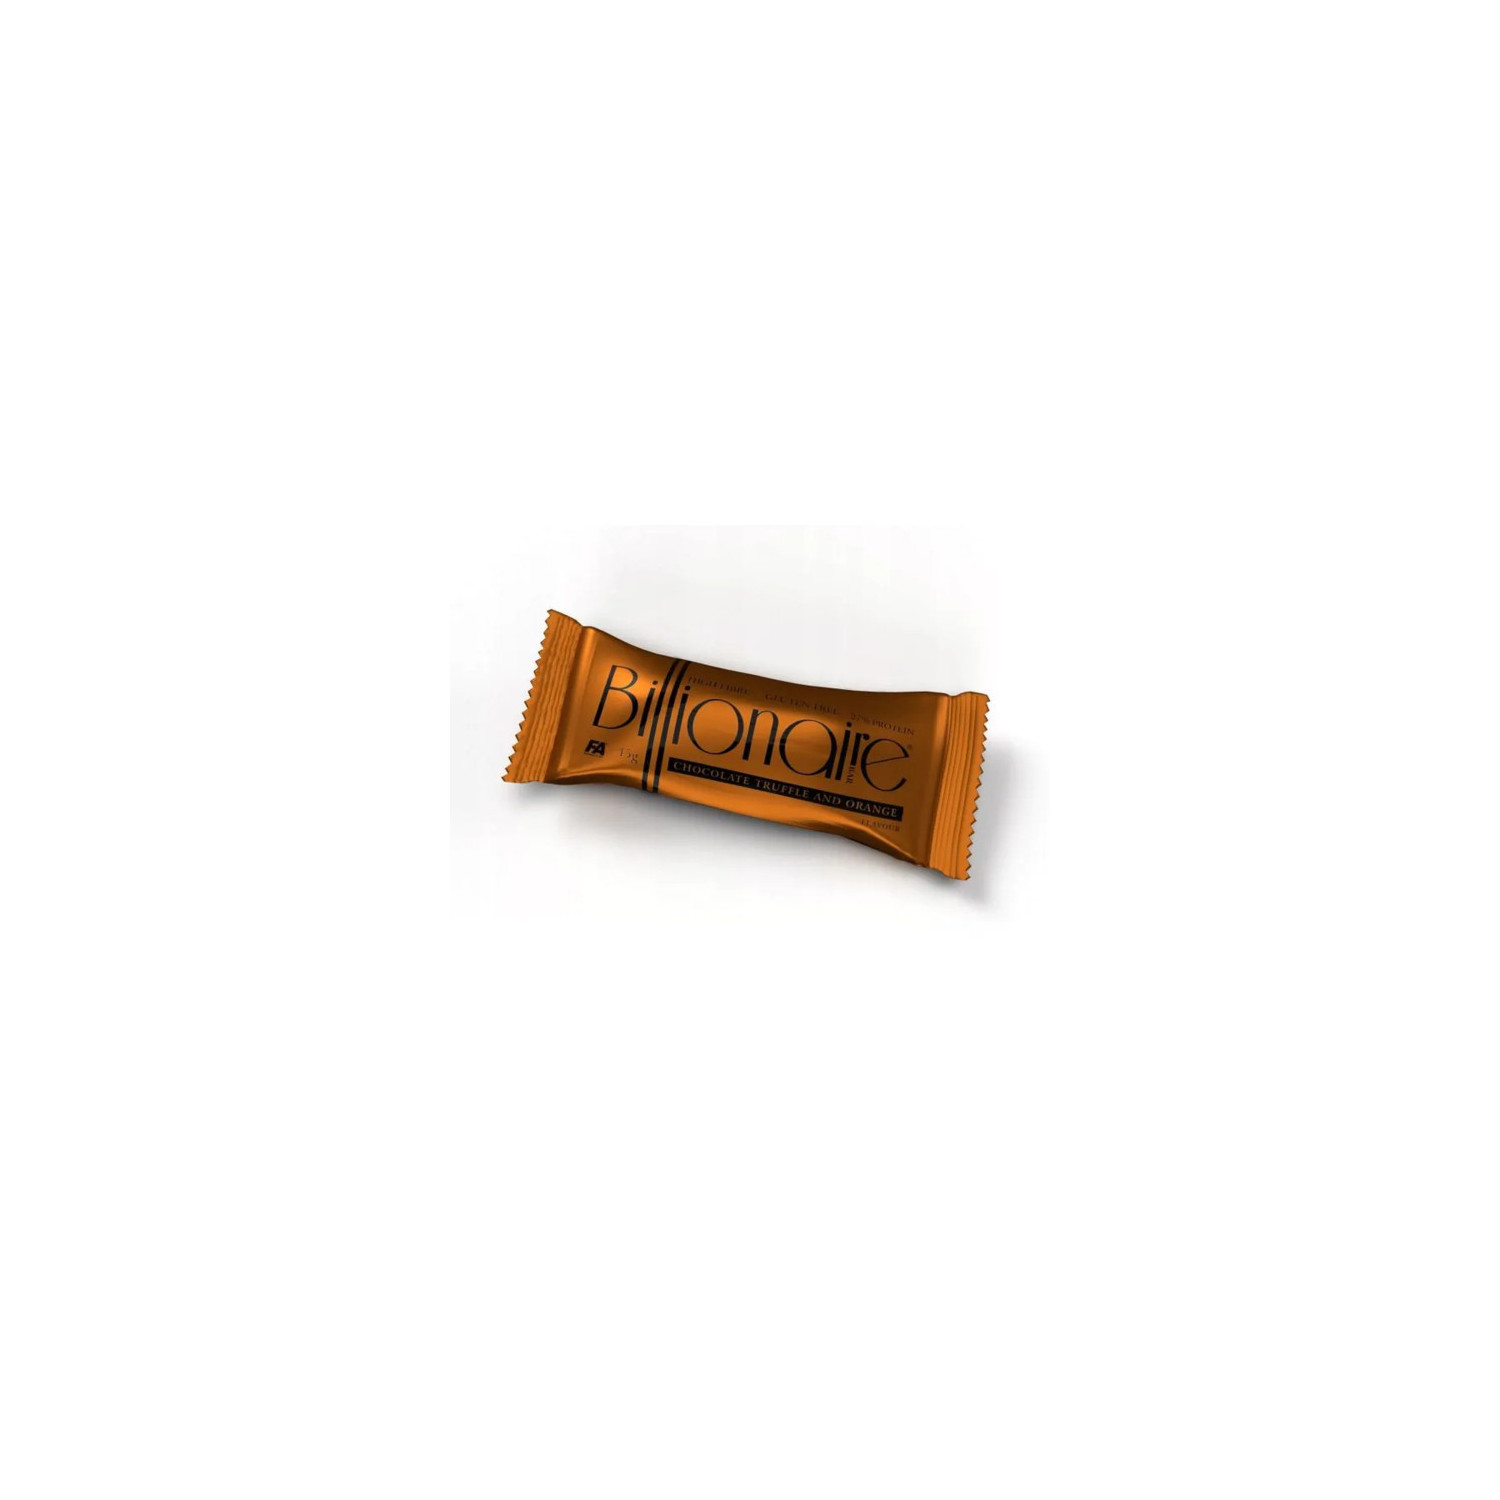 BILLIONAIRE BAR Proteinowy baton o smaku pomarańczowym z gorzką czekoladą. Zawiera substancję słodzącą